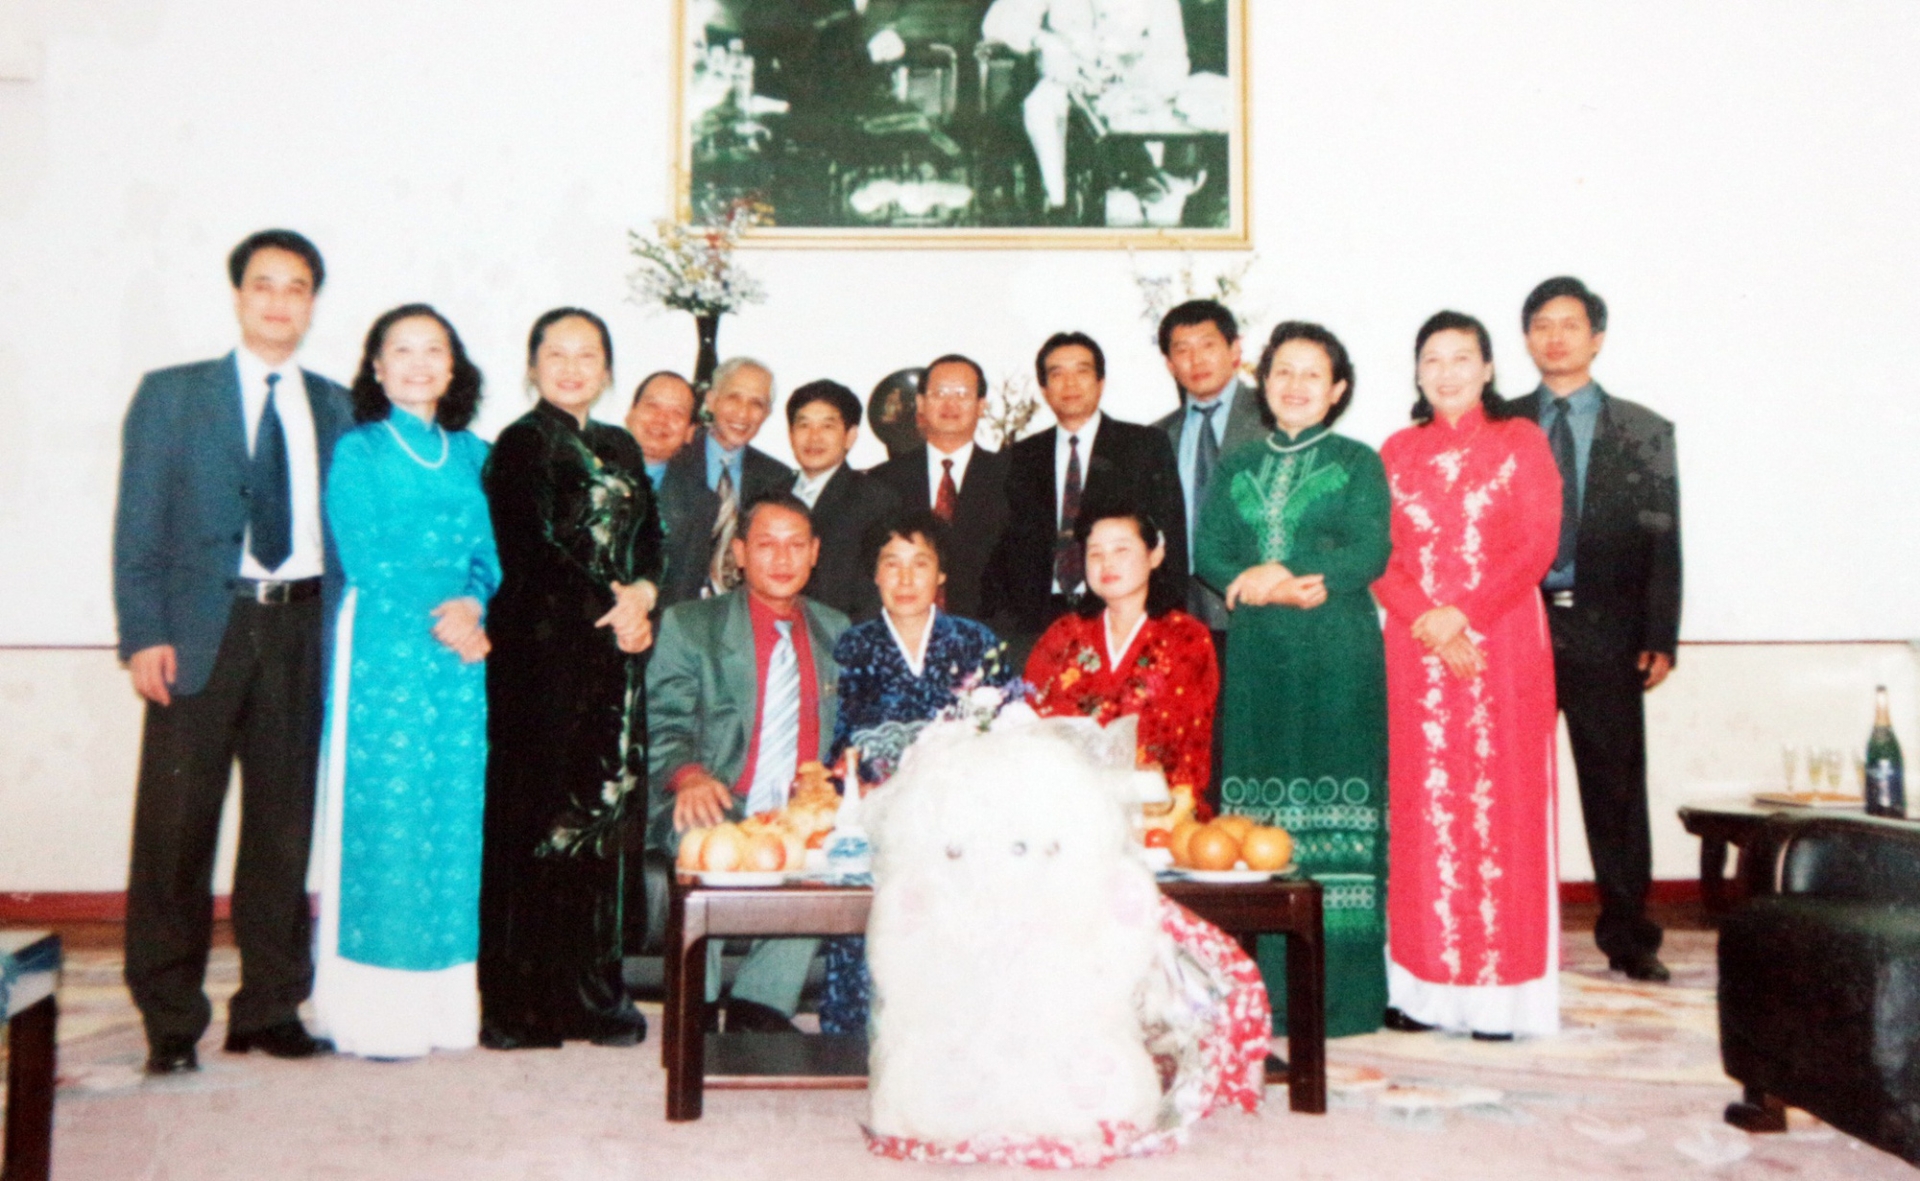 Hôn lễ của 2 người sau đó được tổ chức đơn giản theo nghi thức truyền thống tại Đại sứ quán Việt Nam tại Bình Nhưỡng.  